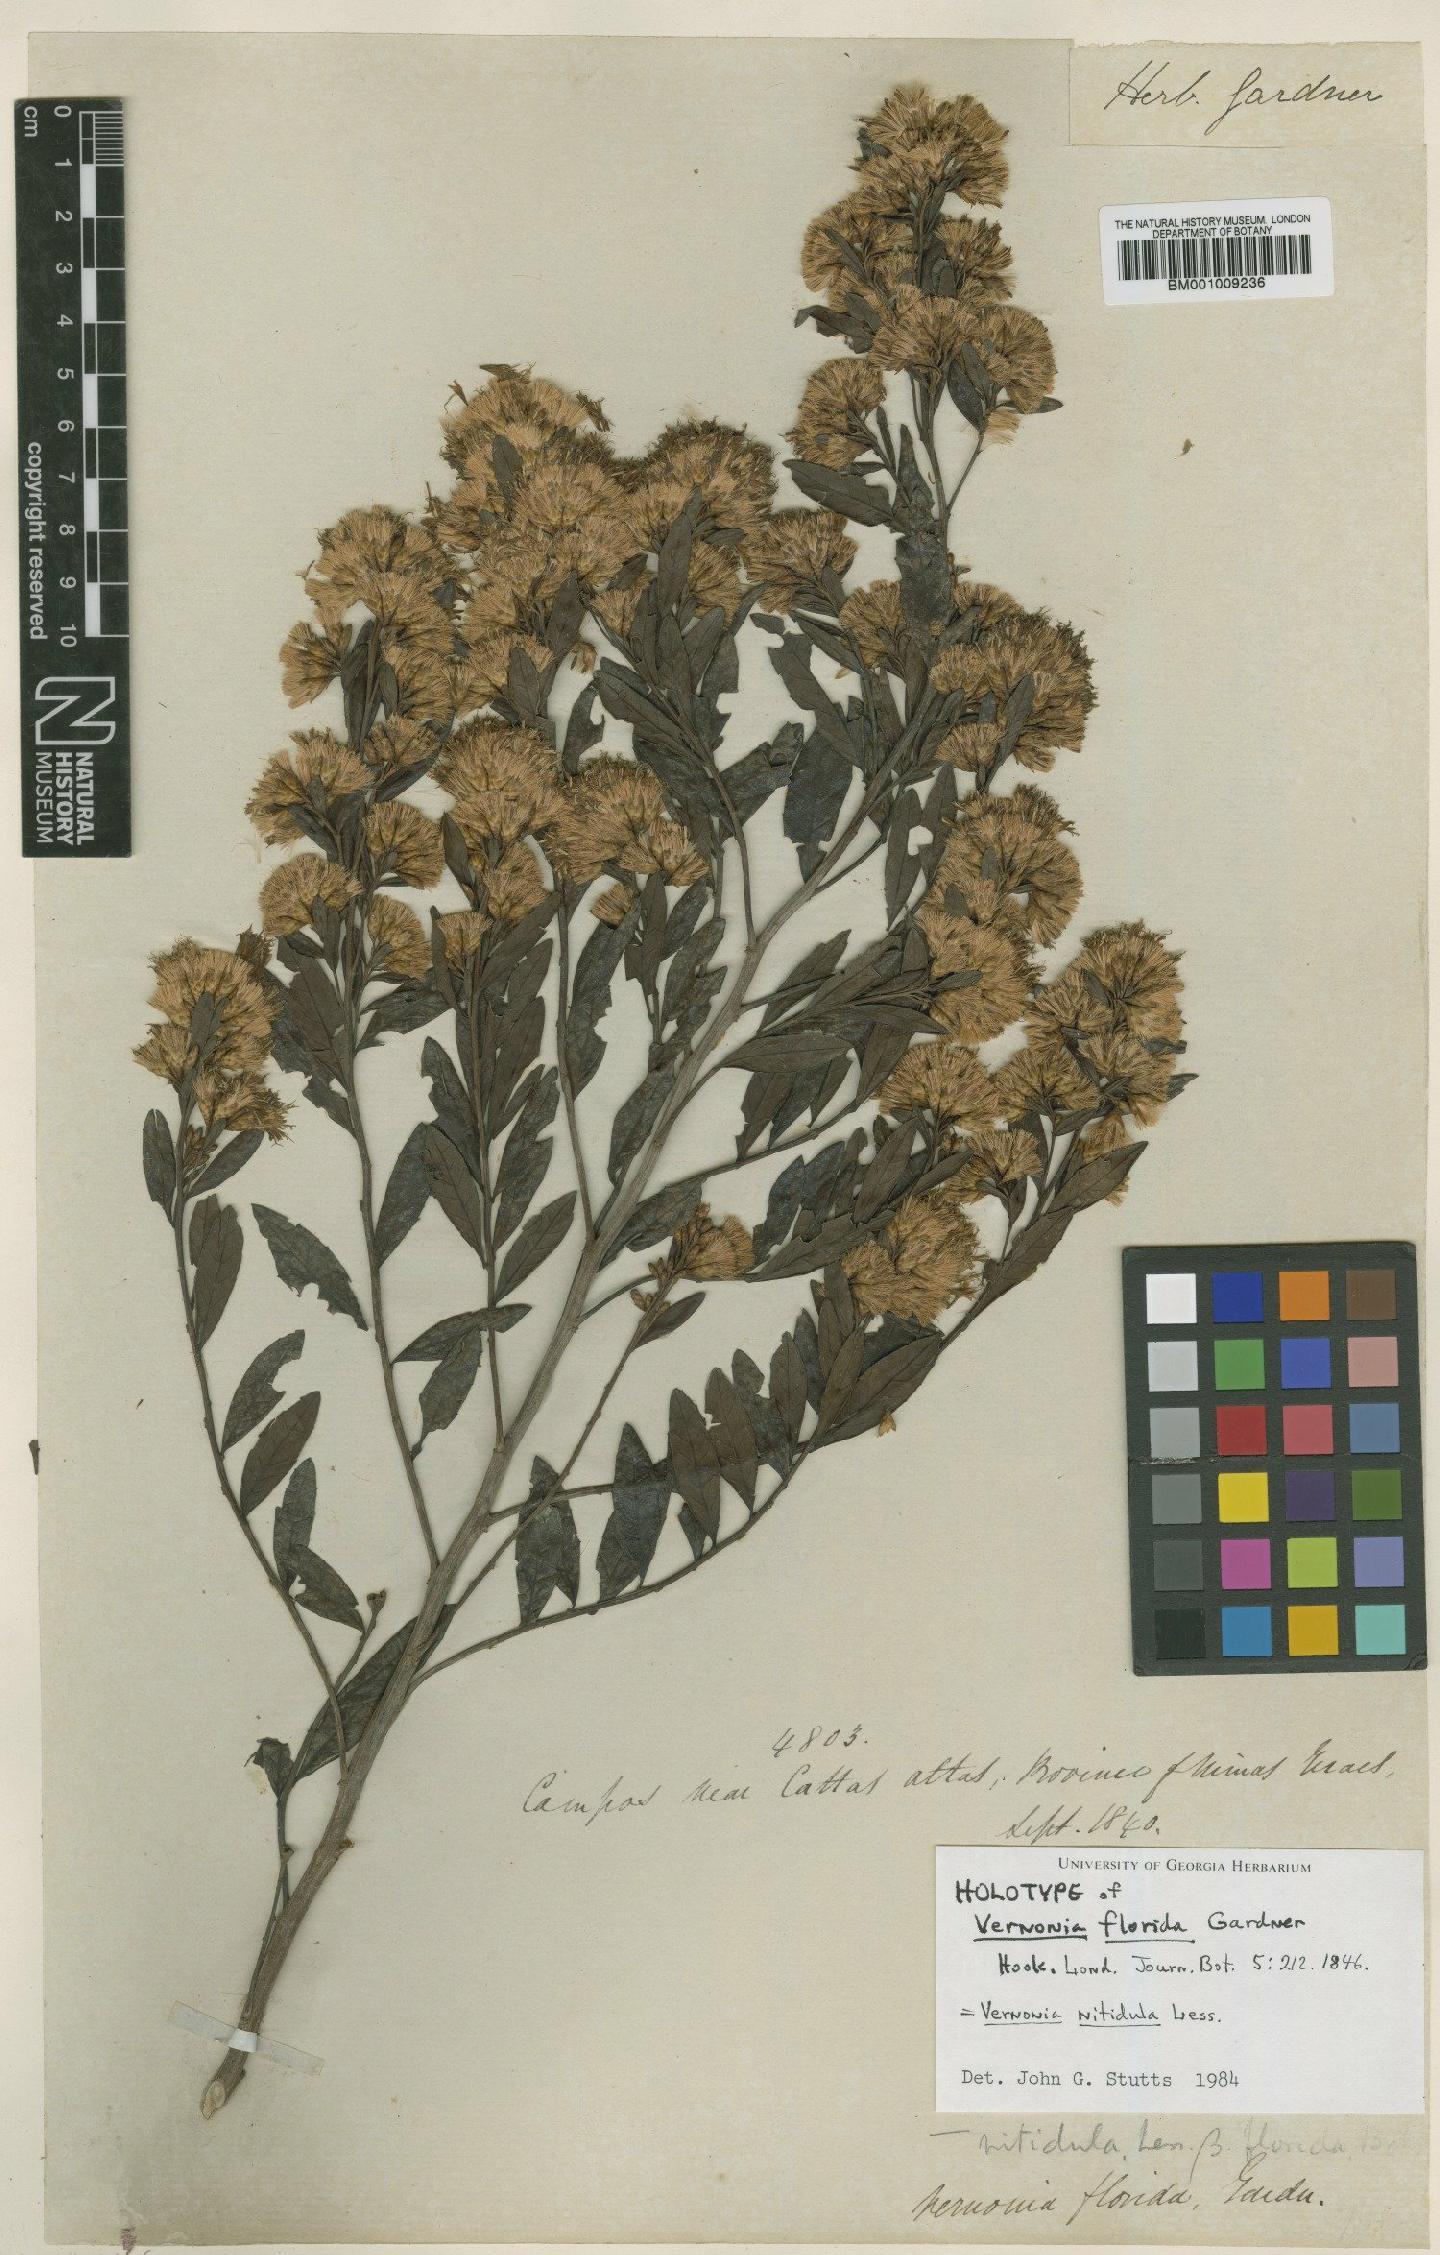 To NHMUK collection (Vernonia nitidula Less; Holotype; NHMUK:ecatalogue:557987)